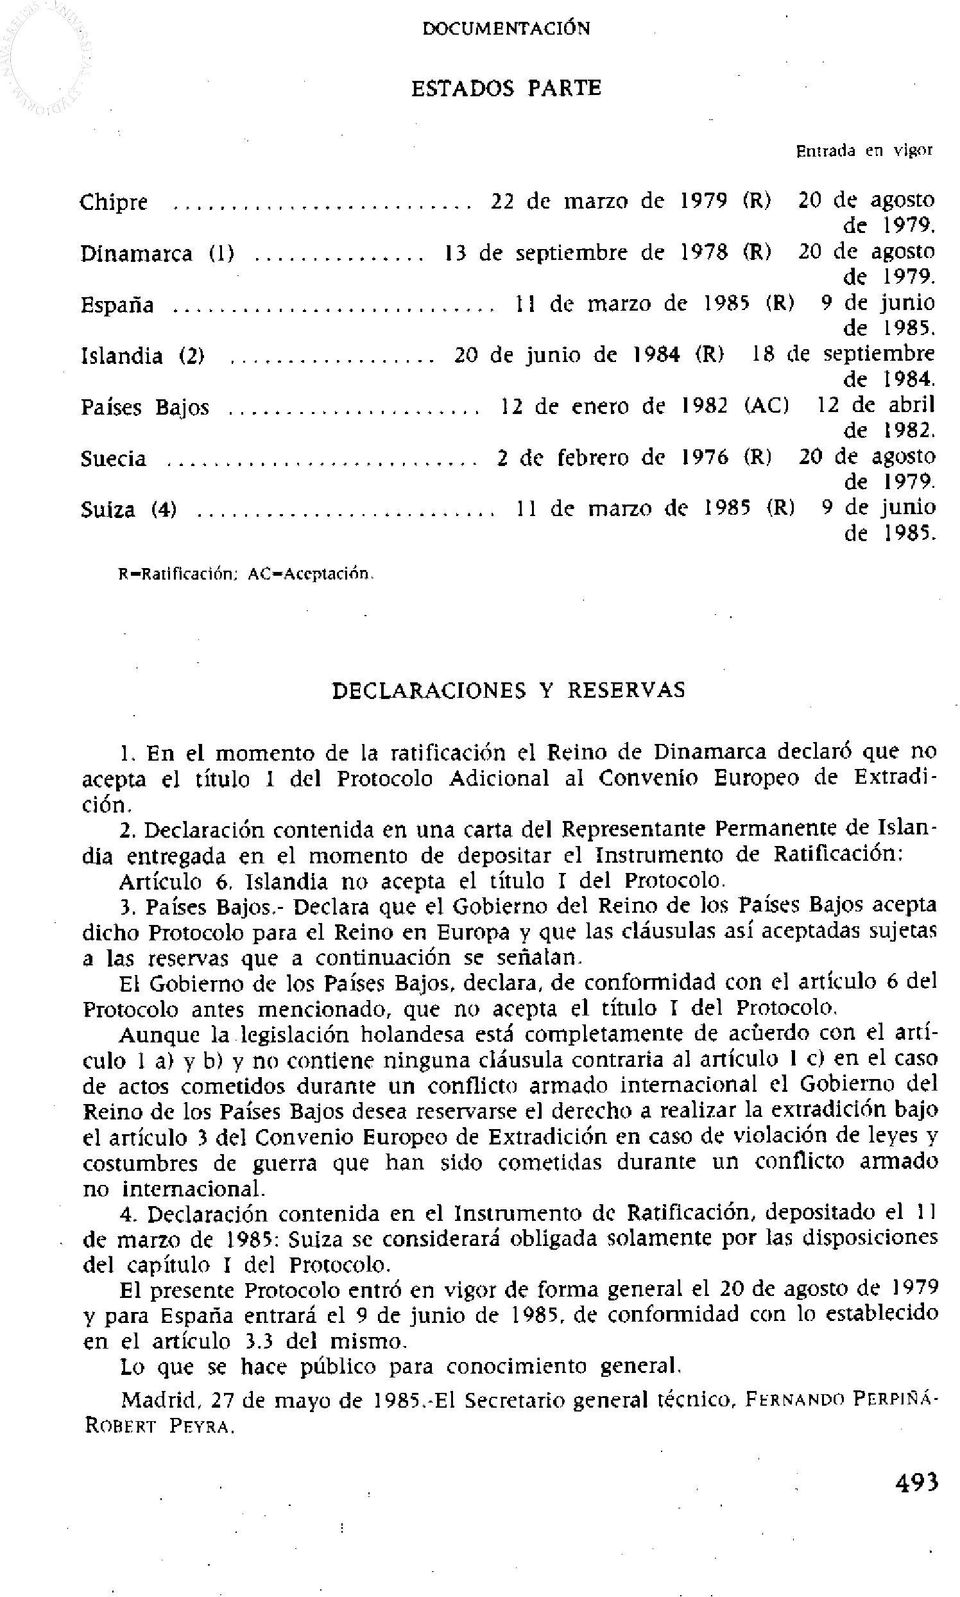 Suiza (4) 11 de marzo de 1985 (R) 9 de junio de 1985. R=Ratificación; AC=Aceptación. DECLARACIONES Y RESERVAS 1.